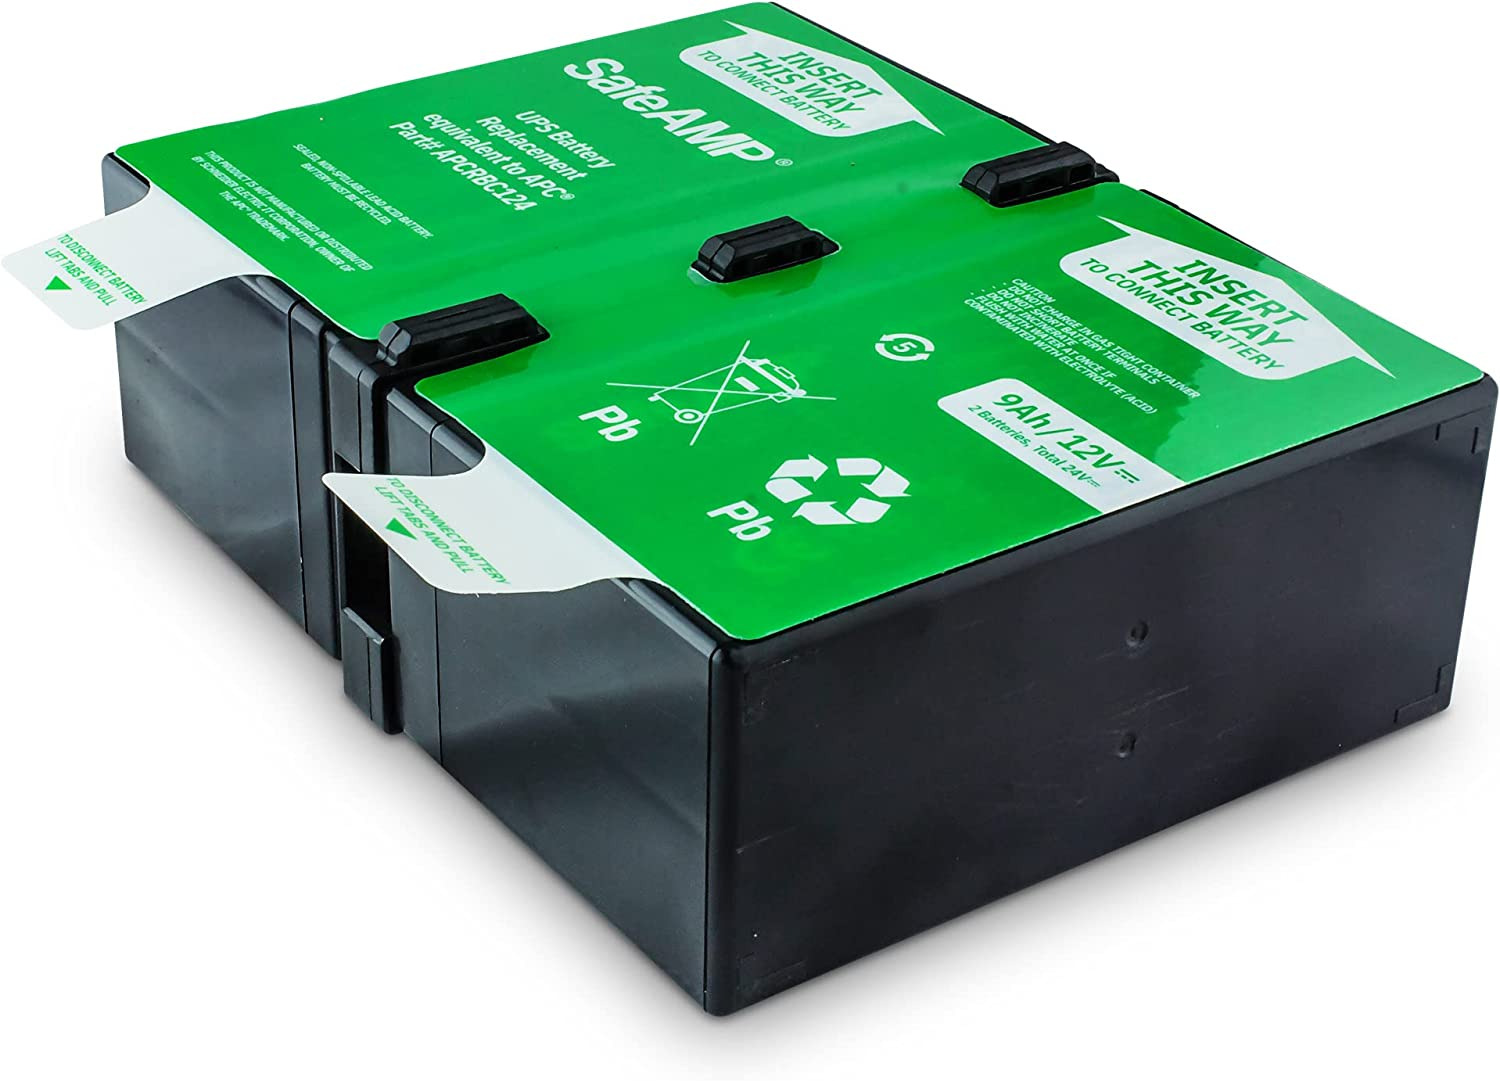 Safeamp UPS 9Ah, 24VDC VRLA Battery Replacement APCRBC124 